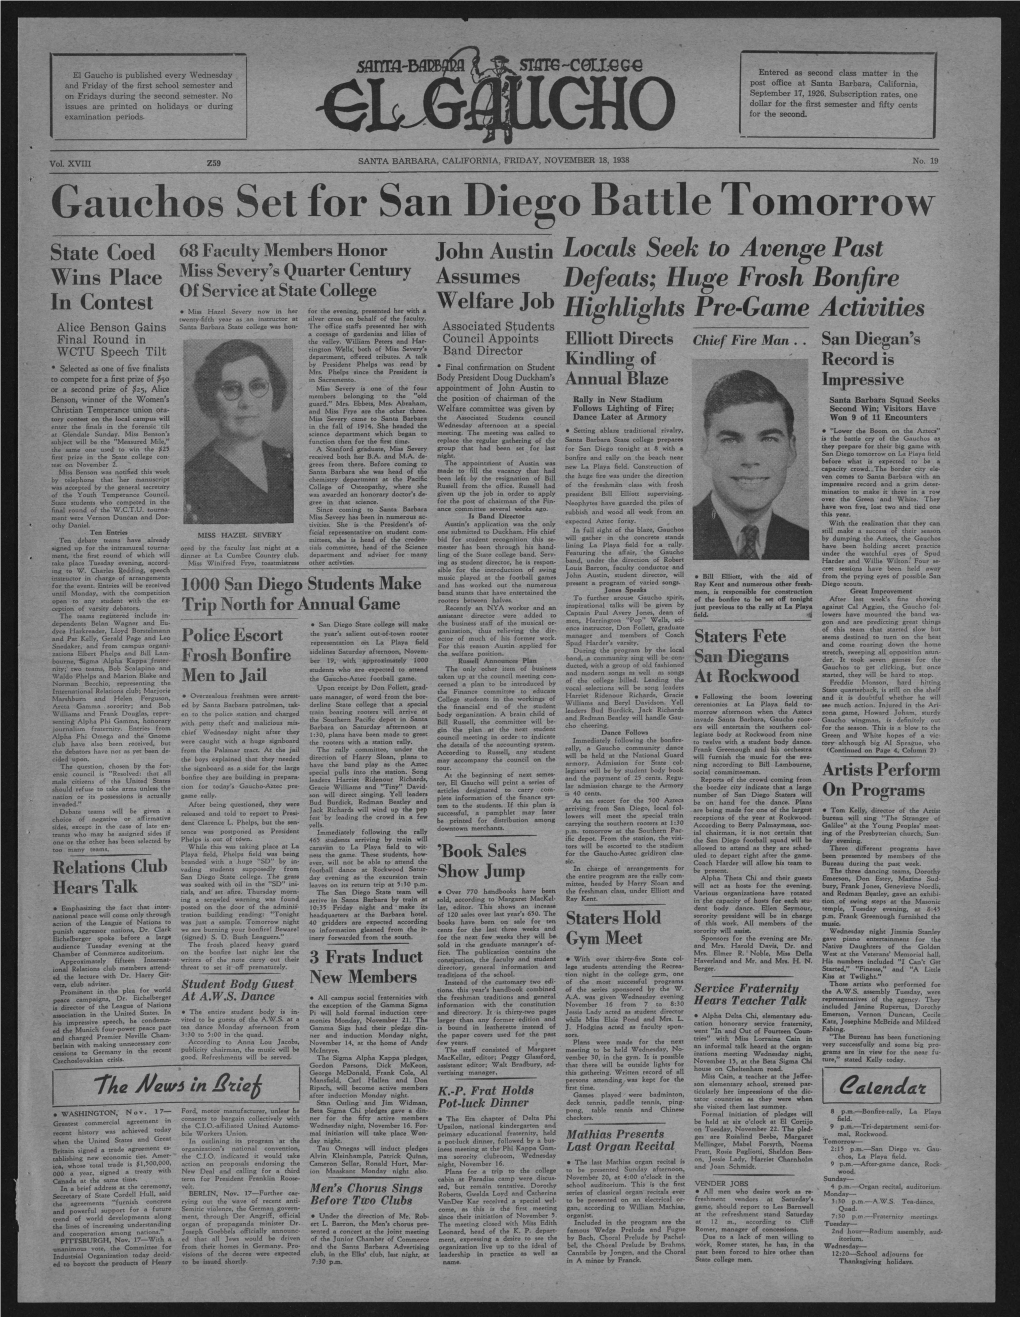 Gauchos Set for San Diego Battle Tomorrow